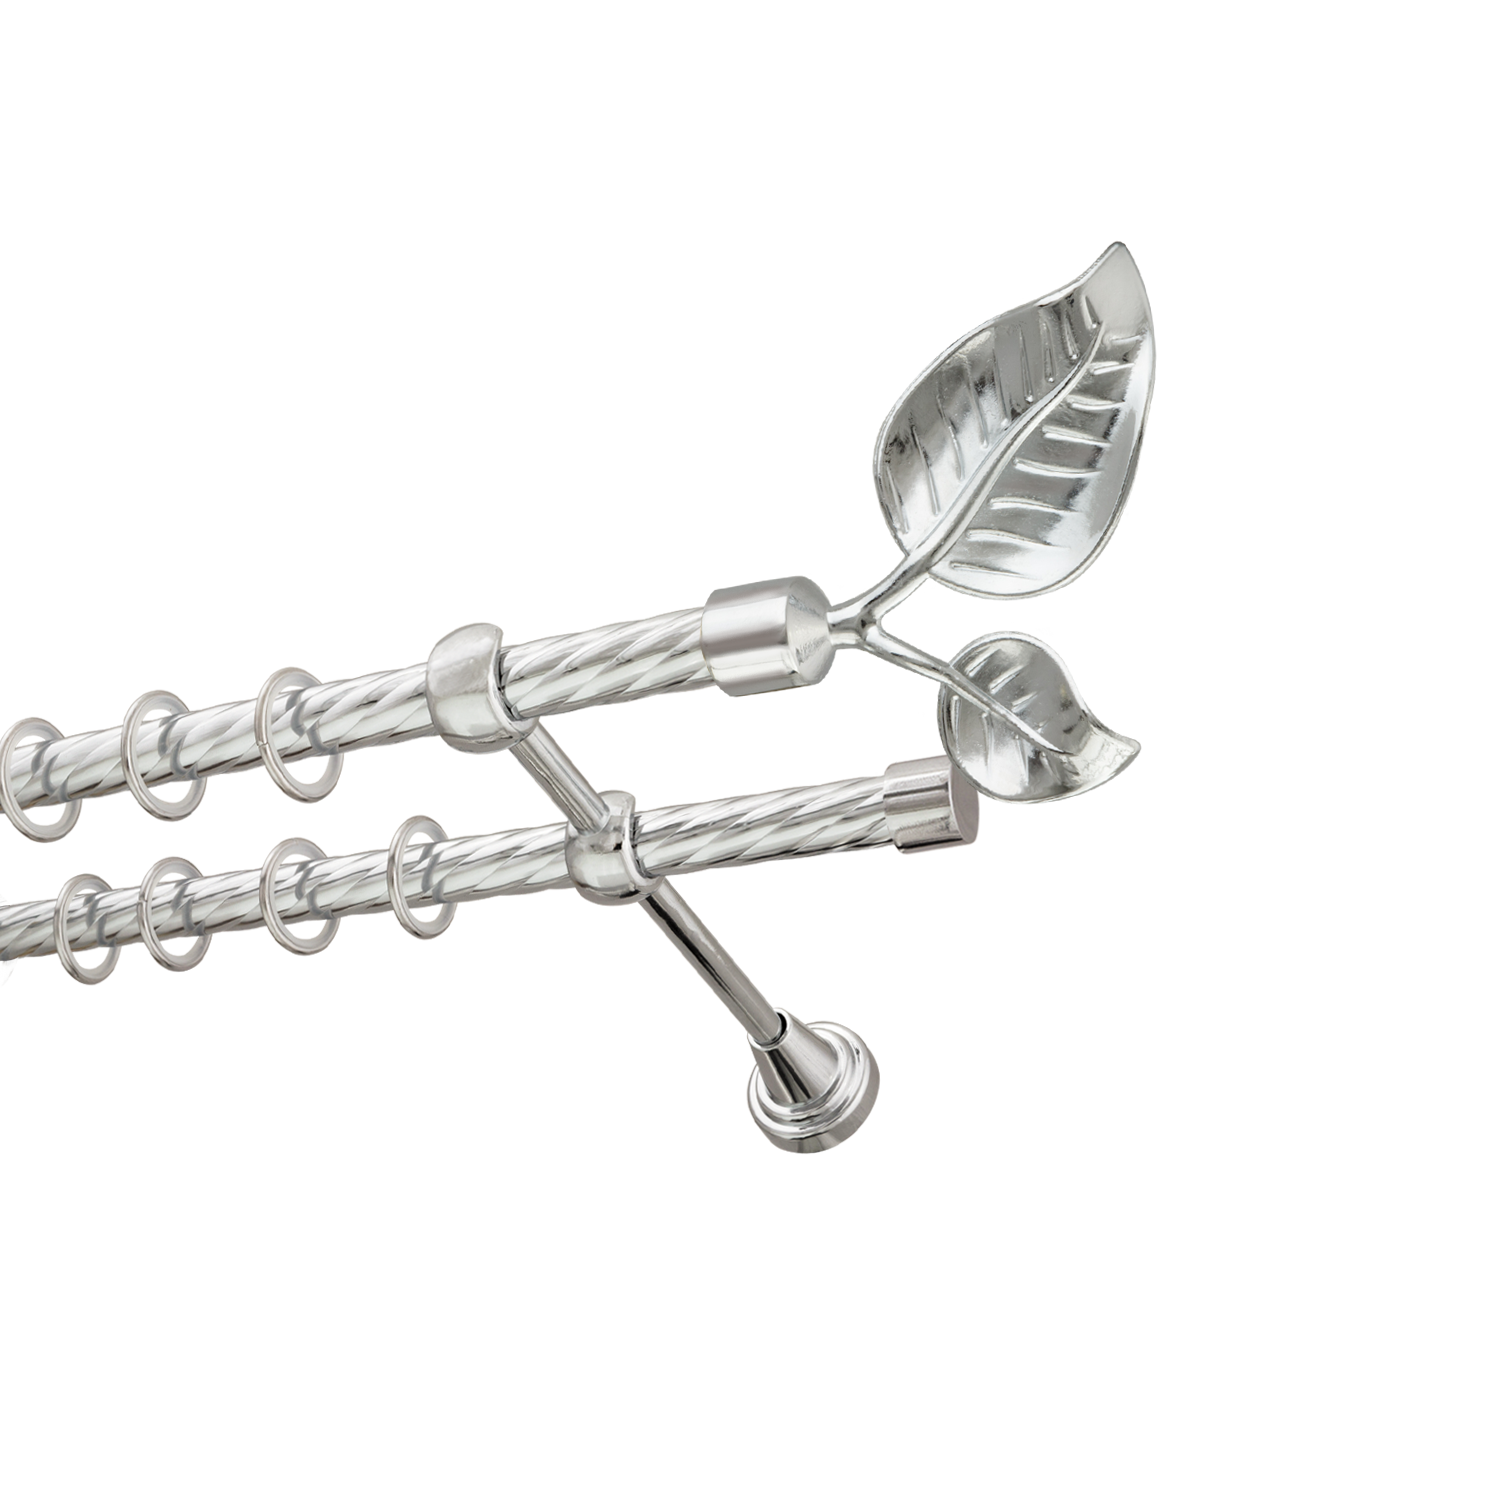 Металлический карниз для штор Тропик, двухрядный 16/16 мм, серебро, витая штанга, длина 200 см - фото Wikidecor.ru